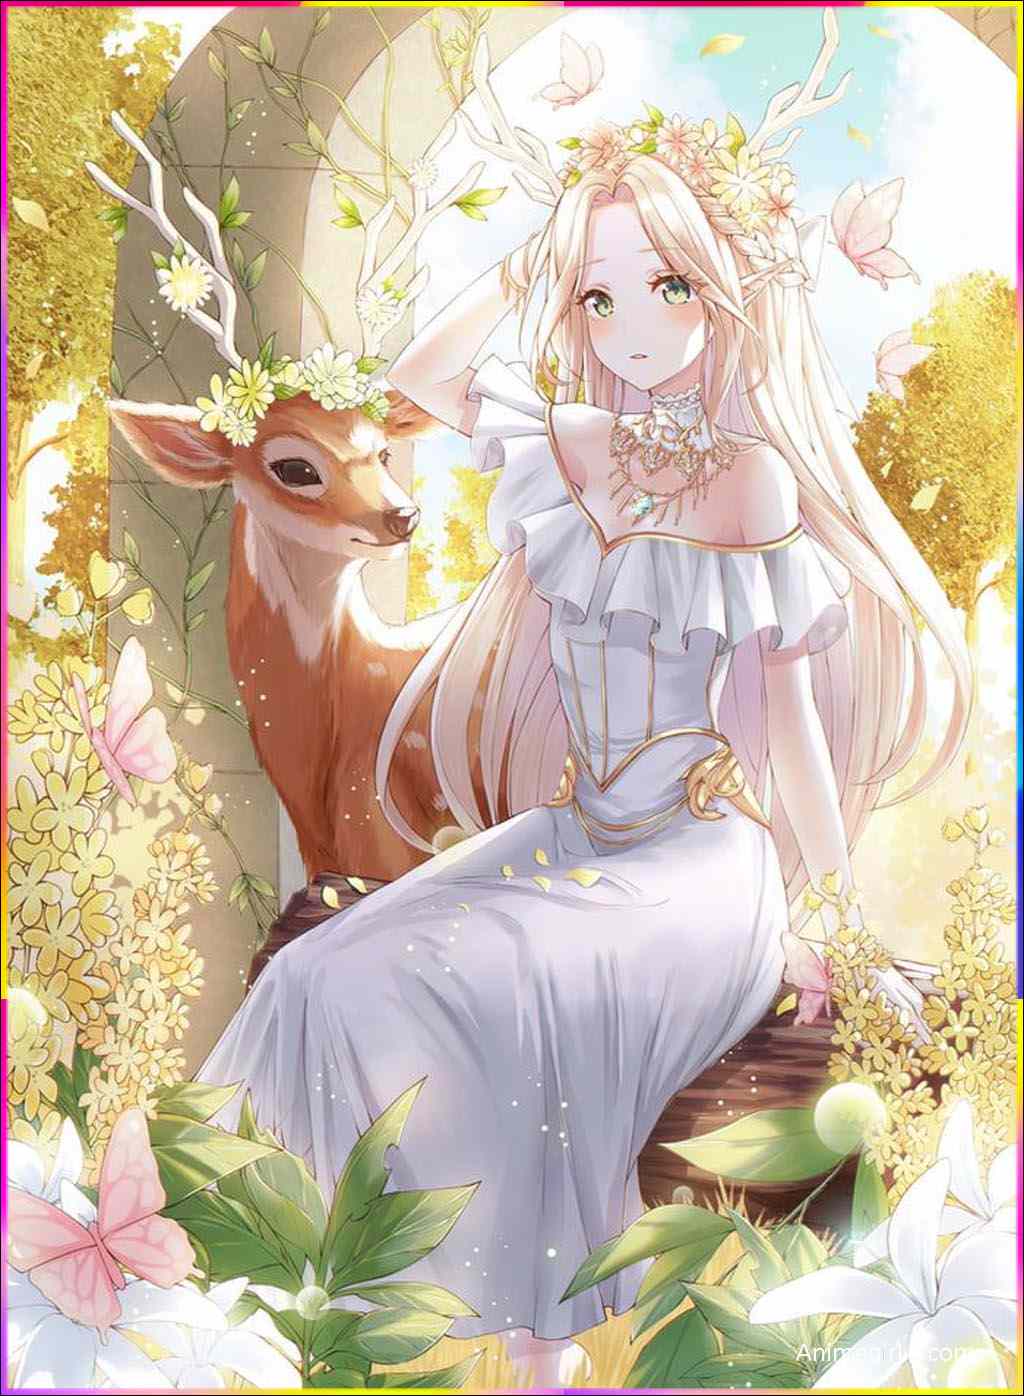 anime girl with deer